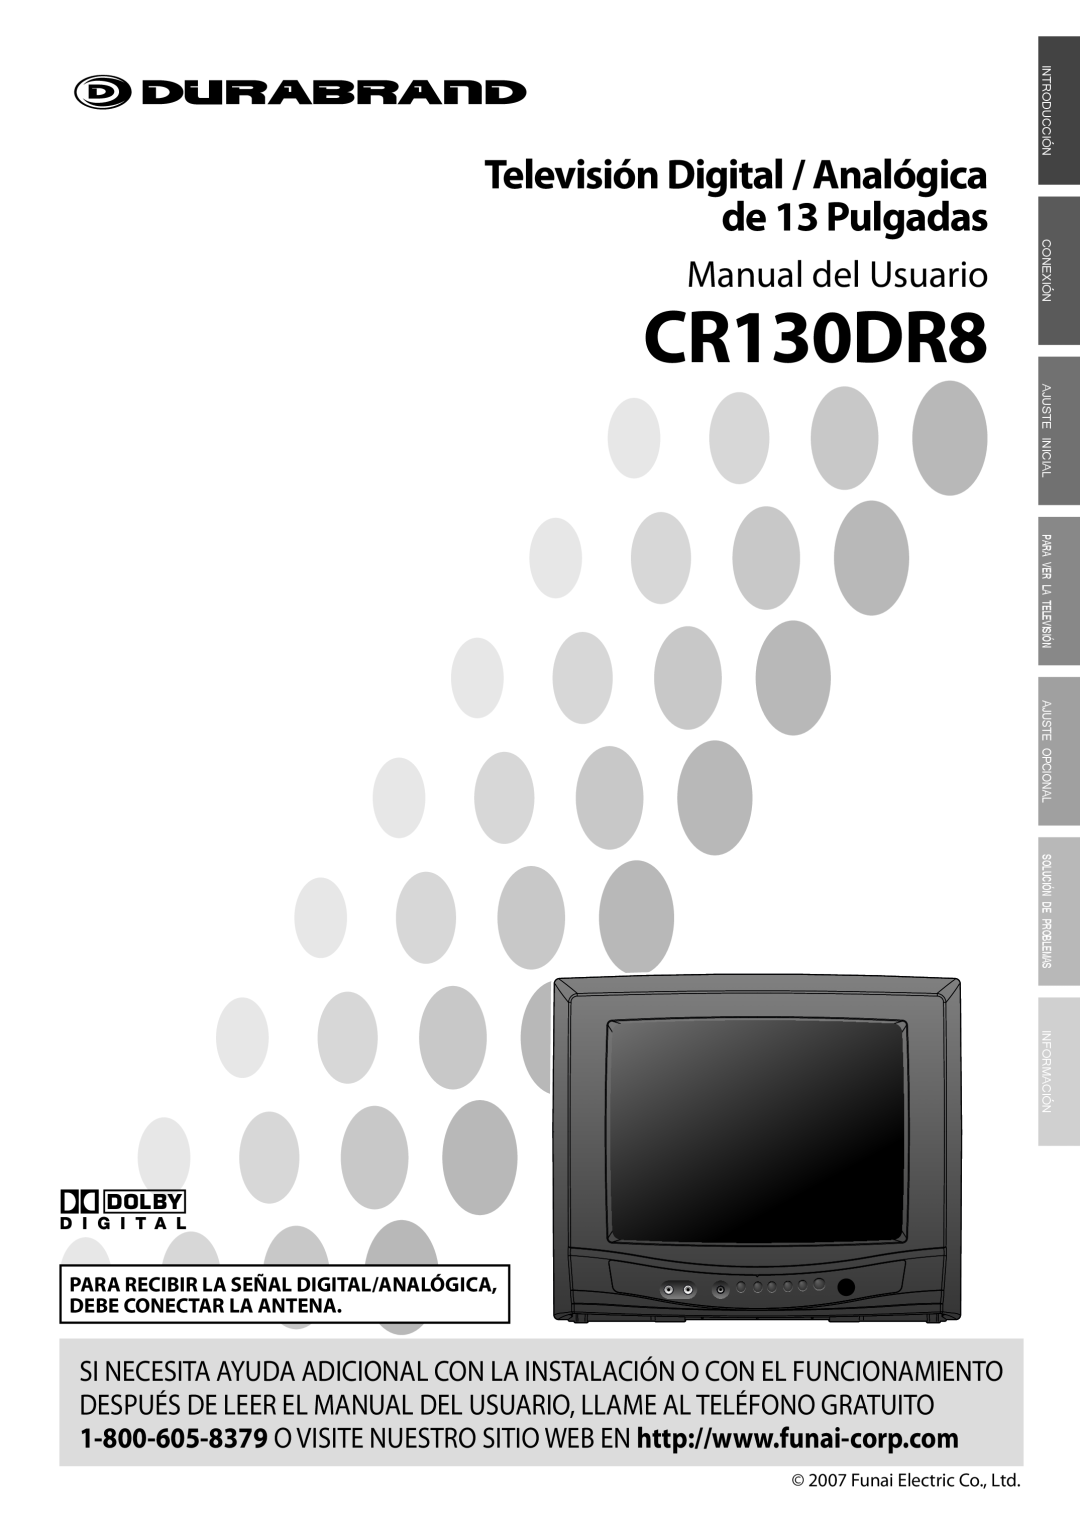 FUNAI CR130DR8 owner manual Manual del Usuario, Televisión Digital / Analógica de 13 Pulgadas, Información 